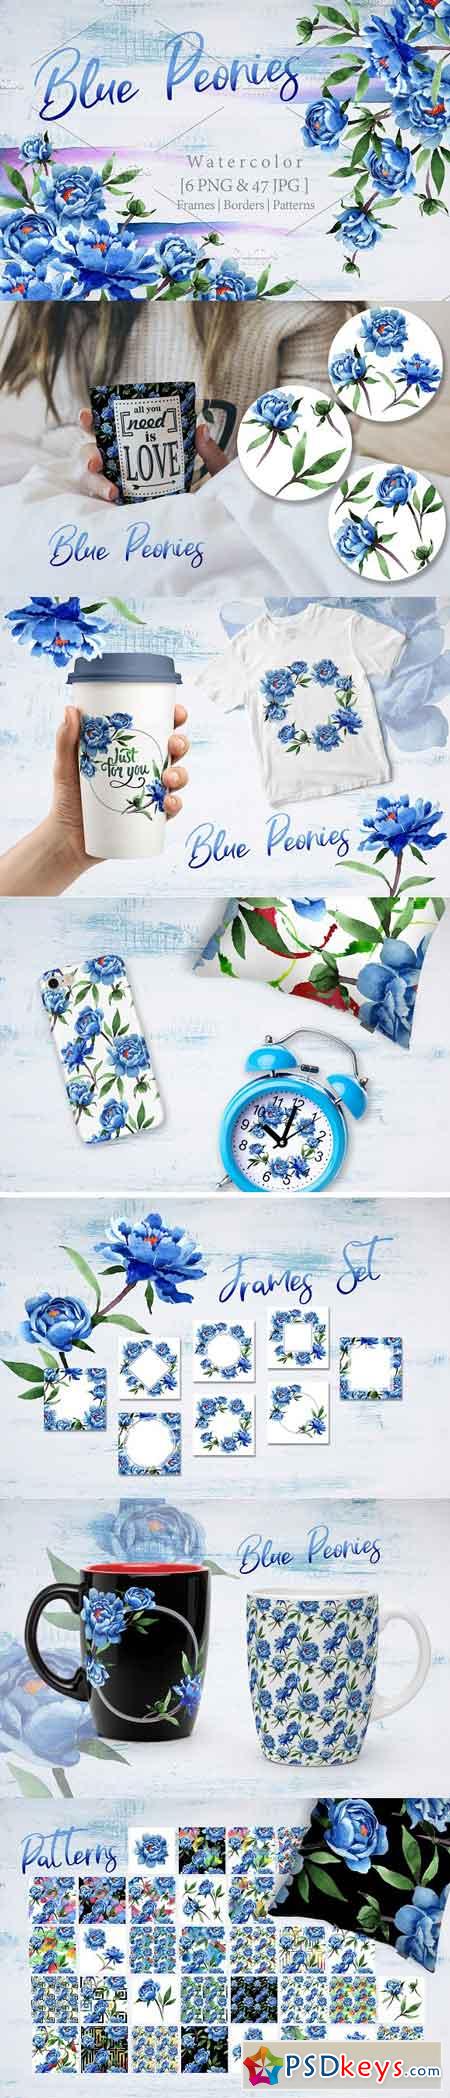 Cool blue Peonies PNG watercolor flower set 2891465